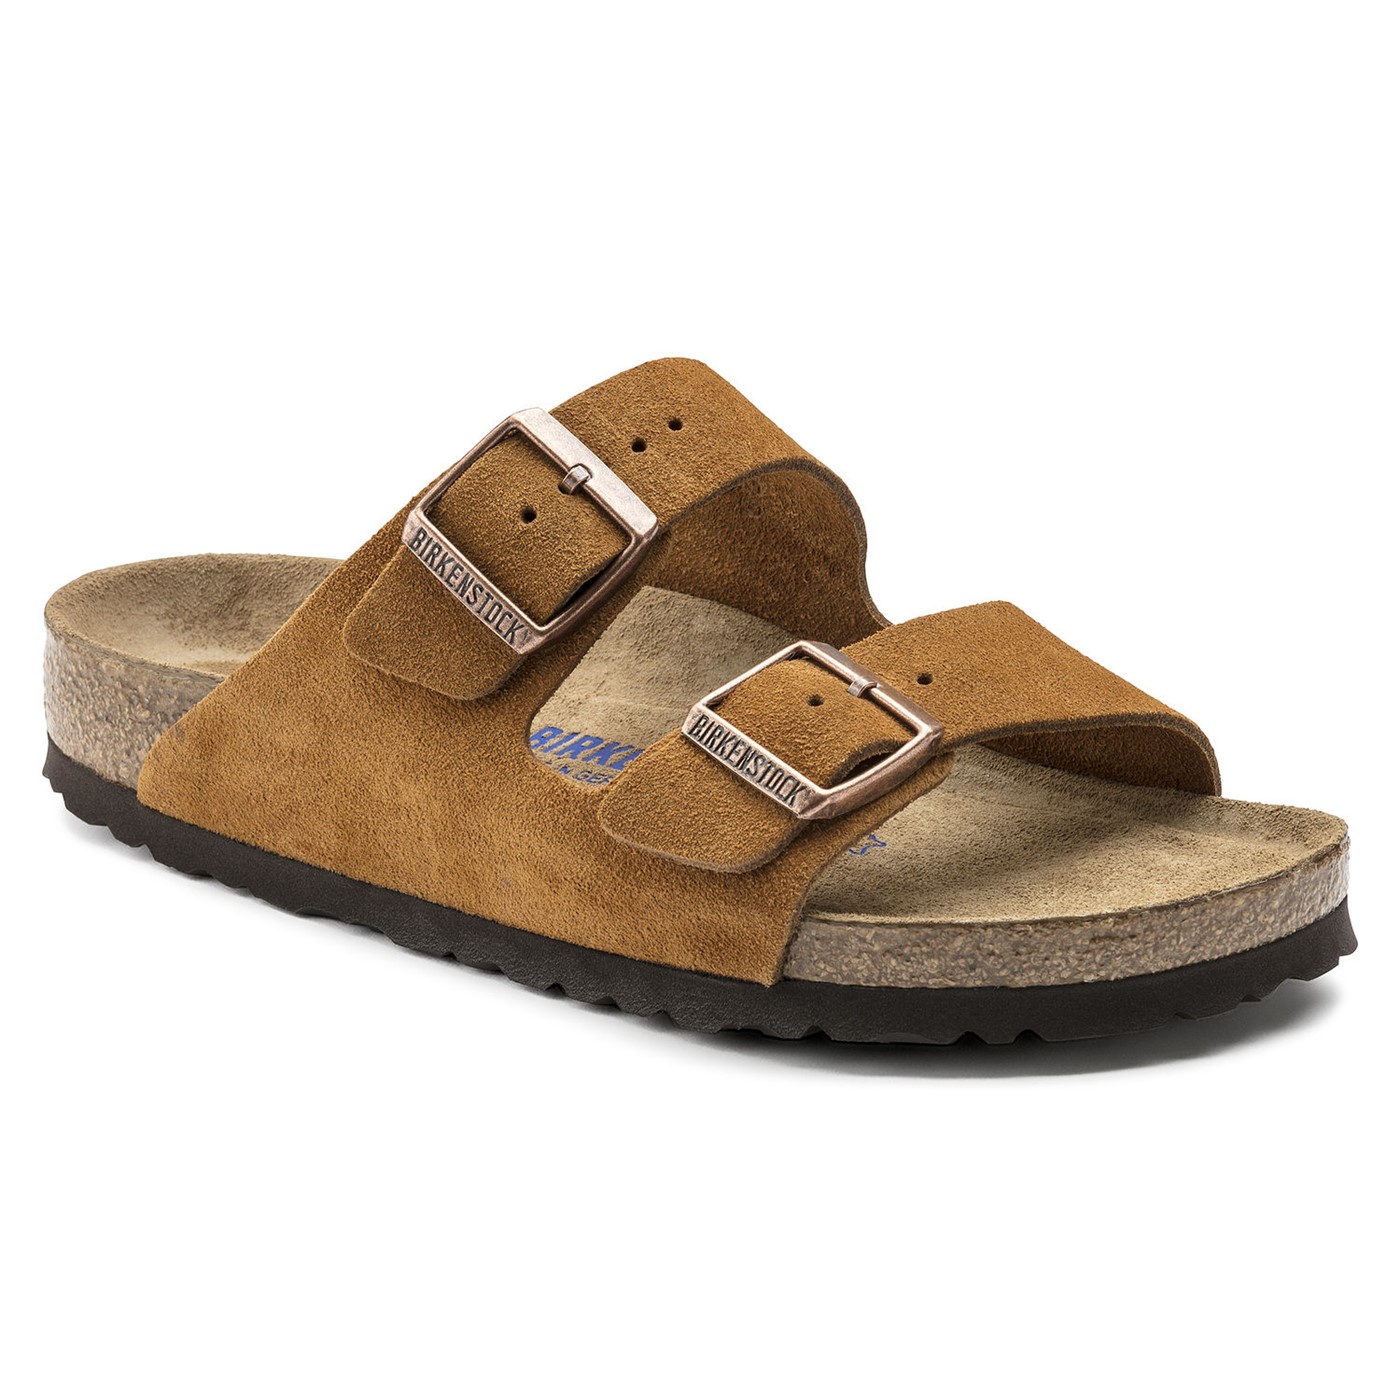 Den populære Arizona sandal → finder du her